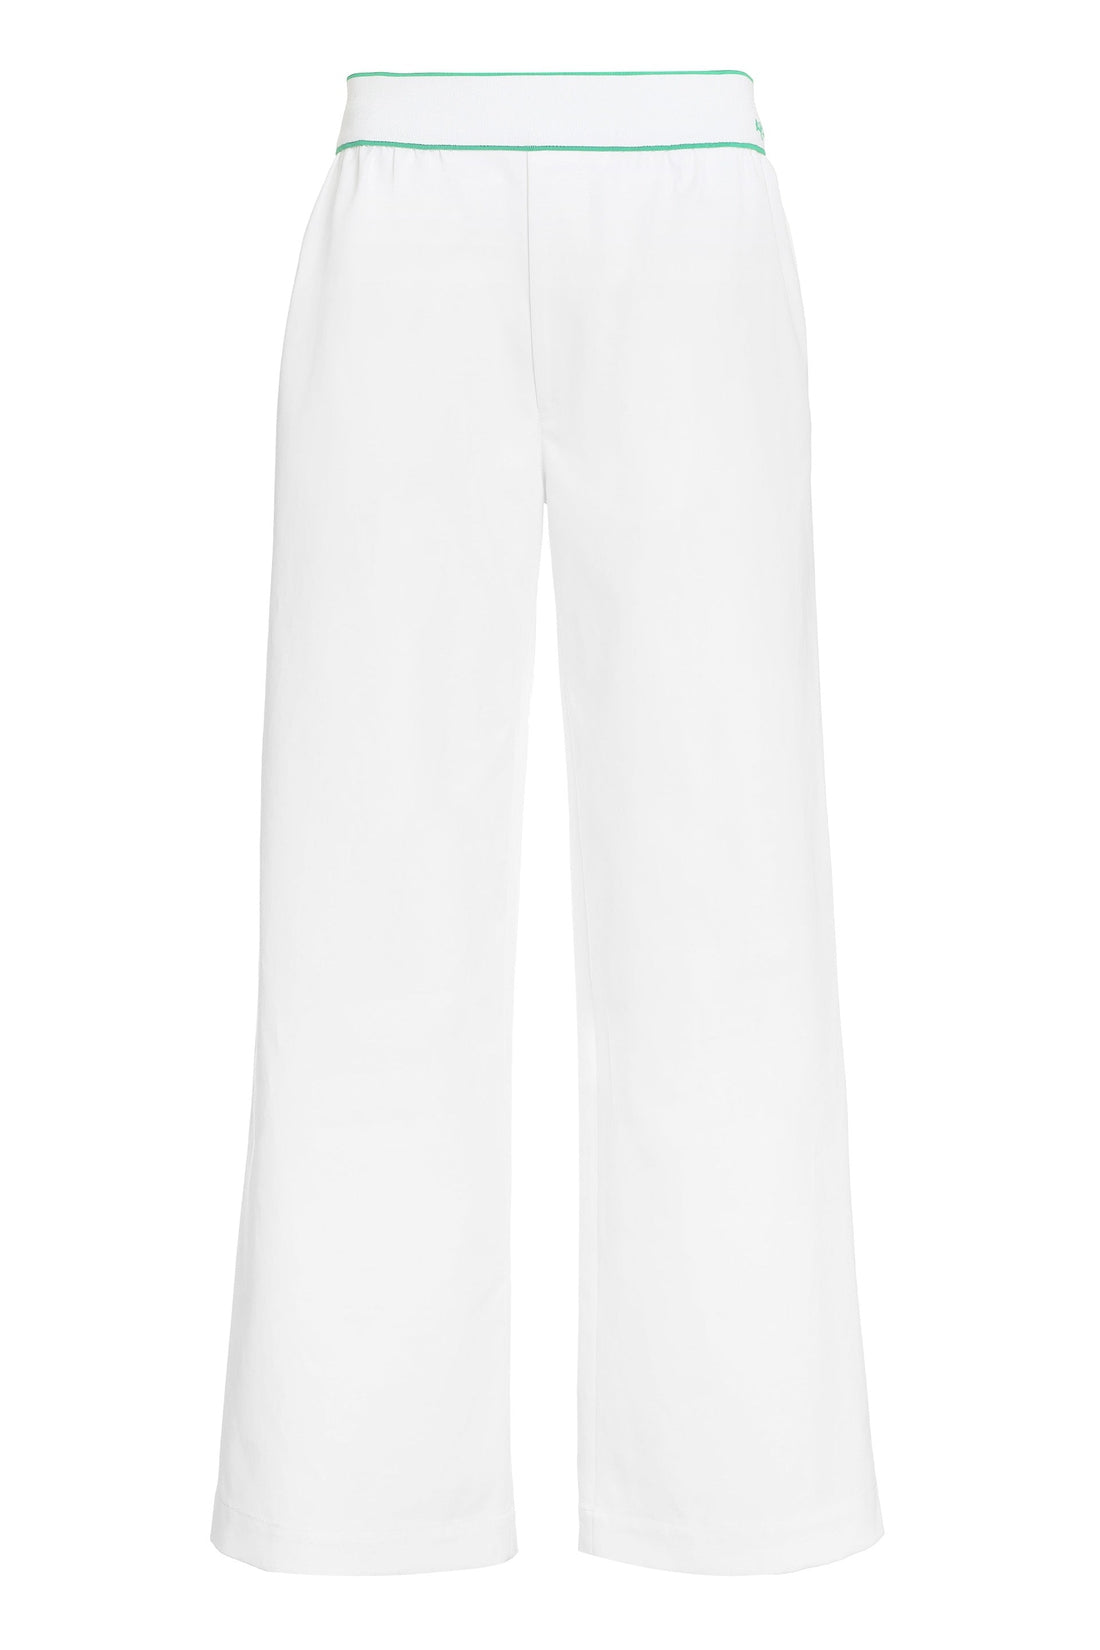 Bottega Veneta-OUTLET-SALE-Wide-leg trousers-ARCHIVIST